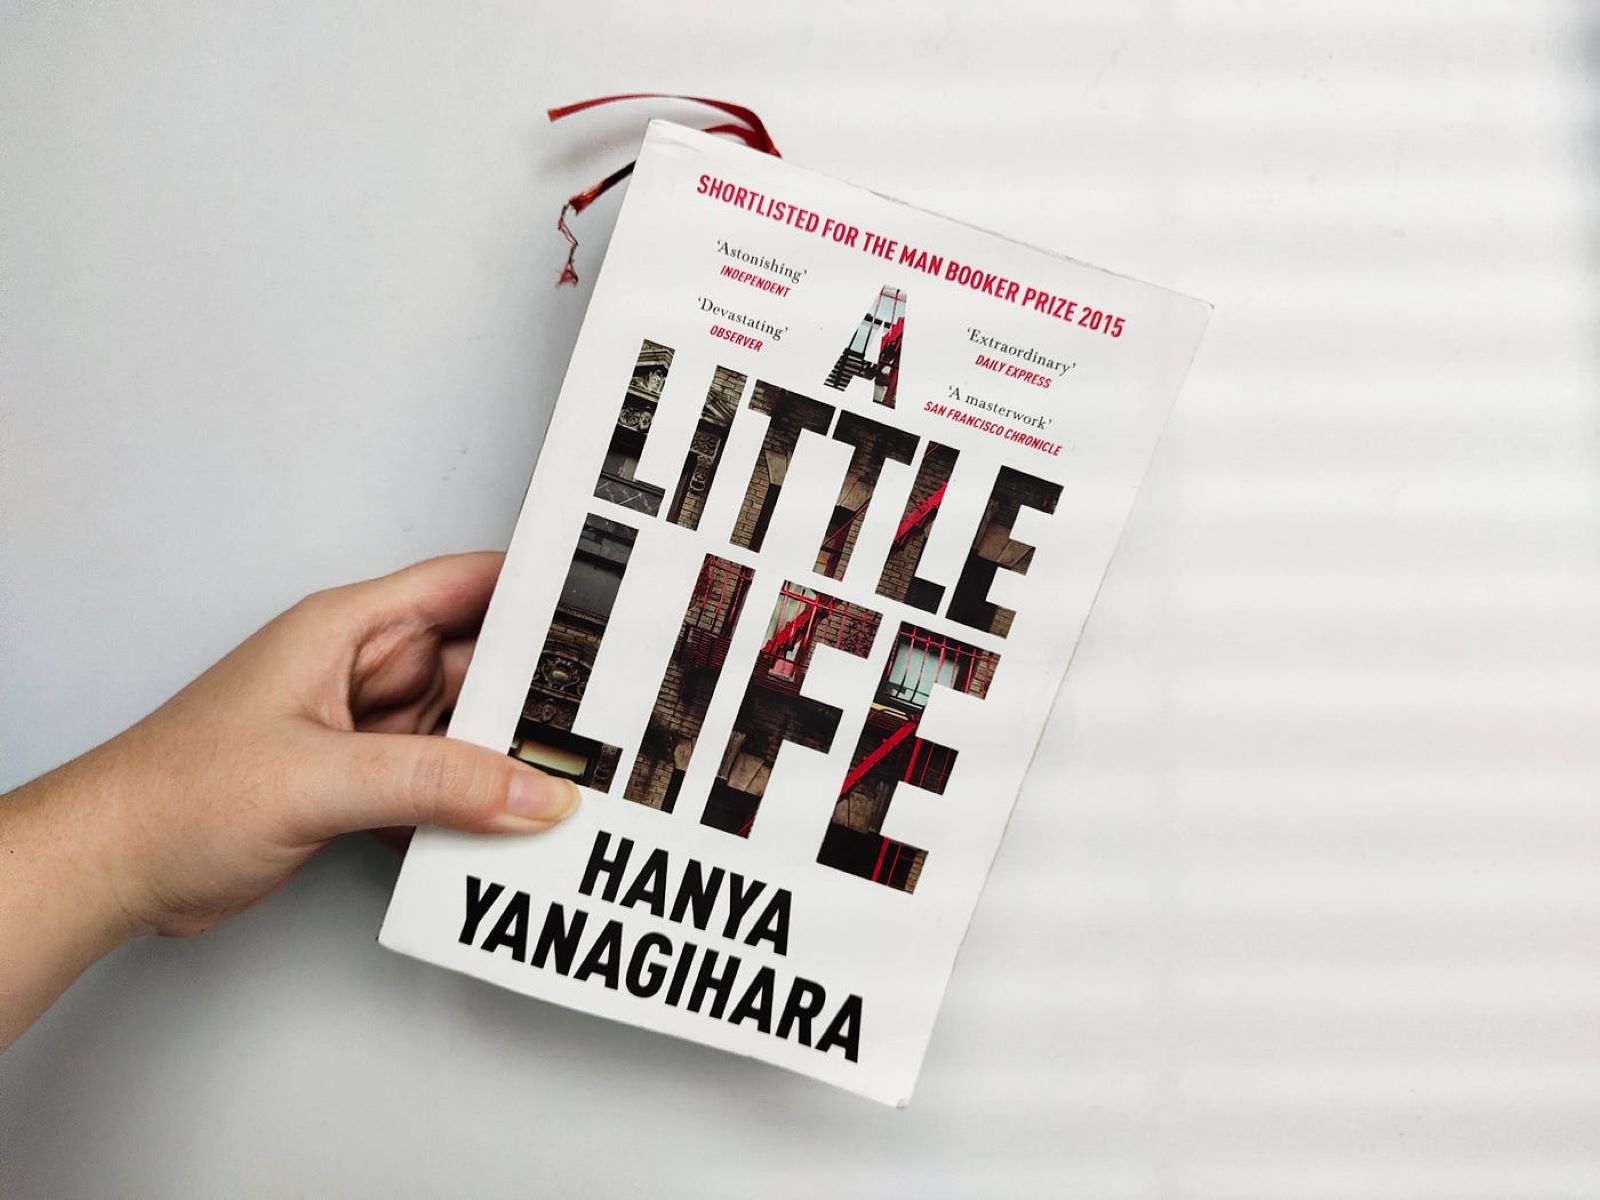 A little life книга. Янагихара. Маленькая жизнь Ханья Янагихара. Hanya Yanagihara a little Life краткое описание.